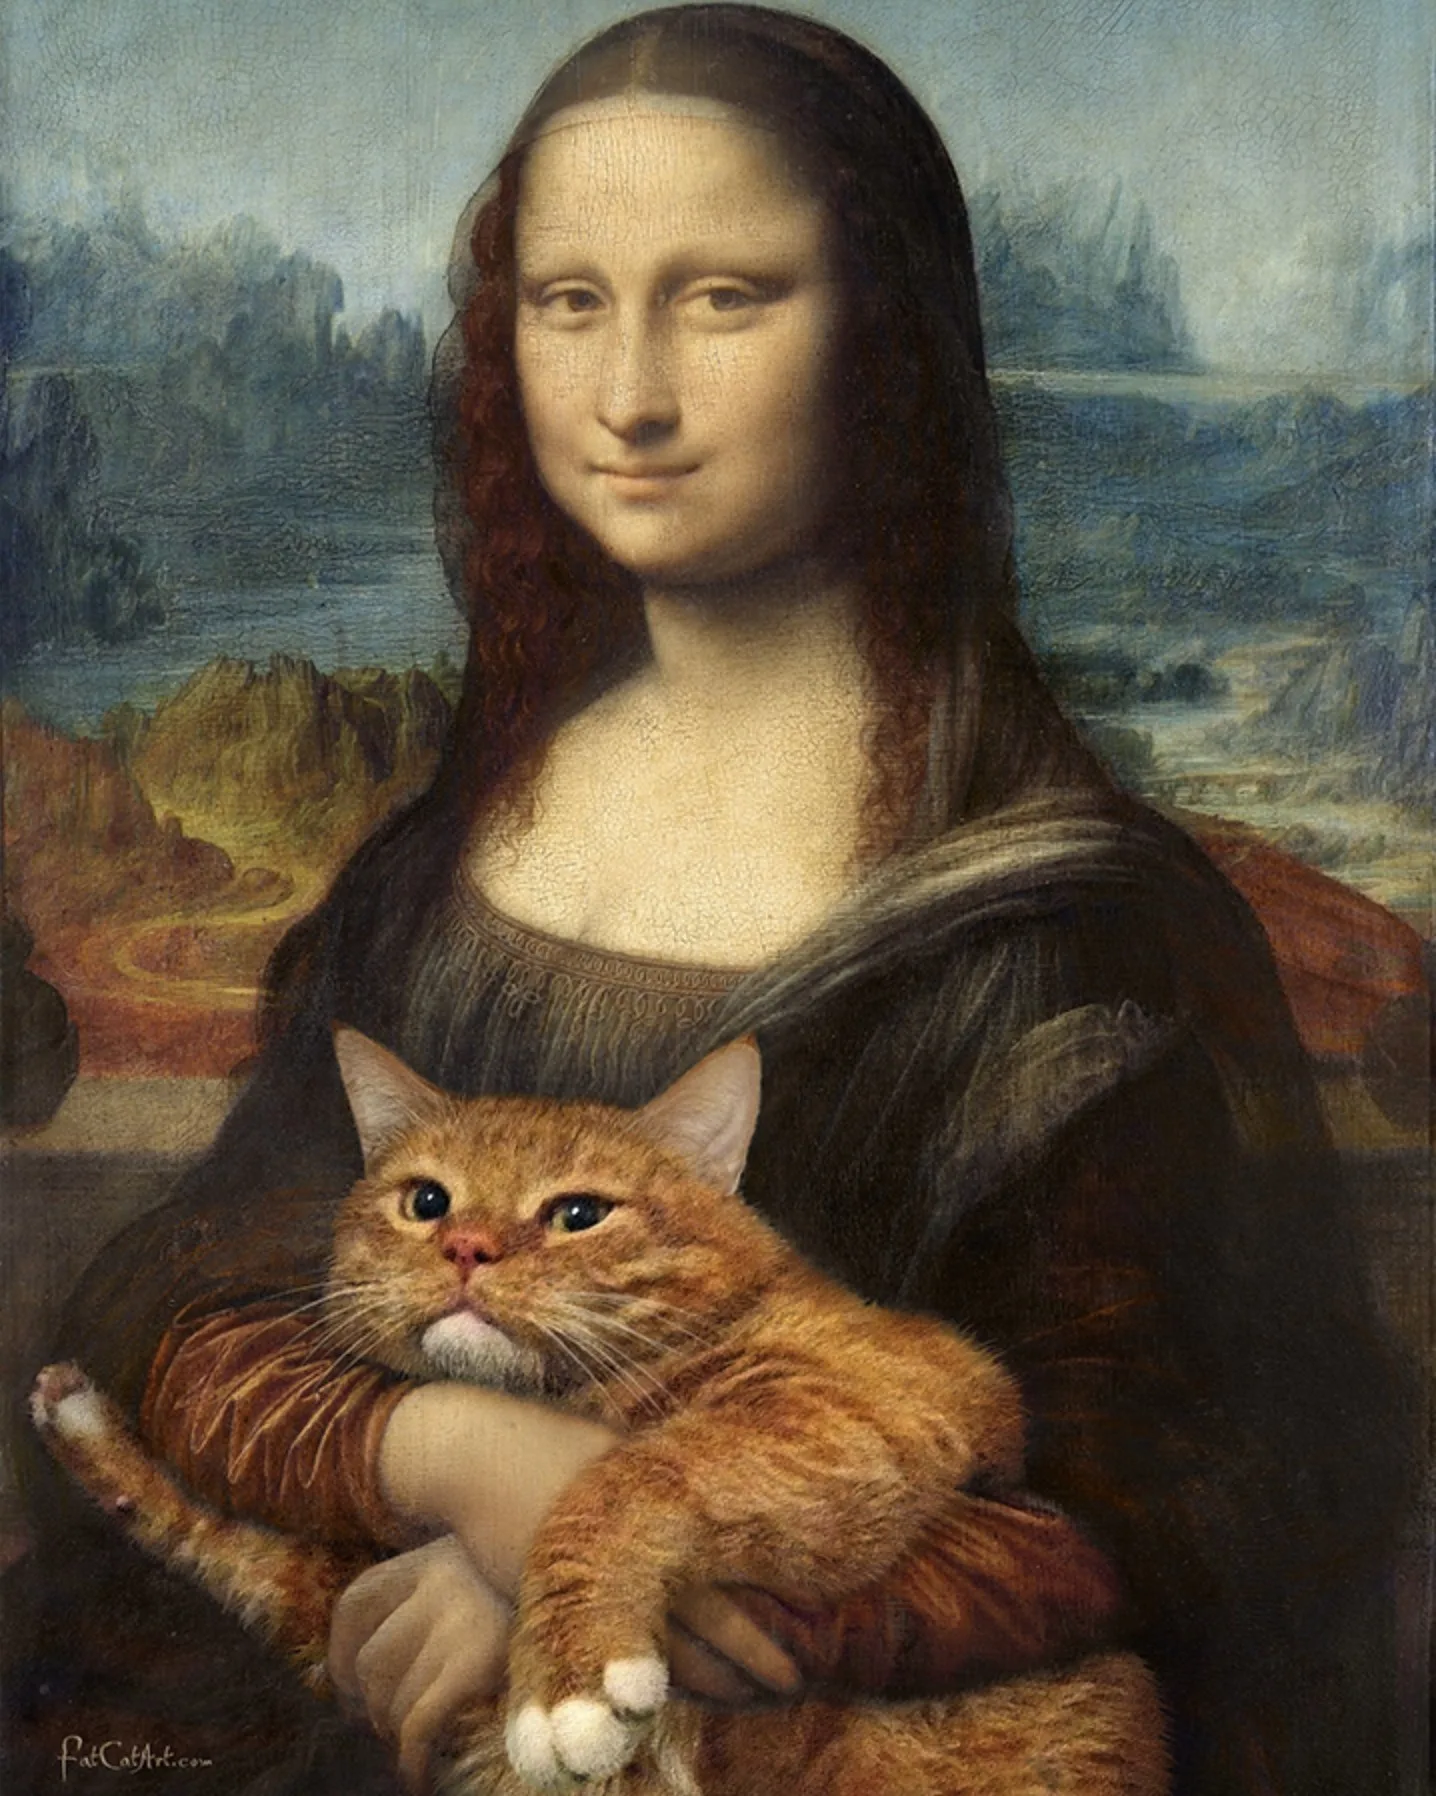 งานศิลปะคลาสสิก แมวส้ม Fatcatart